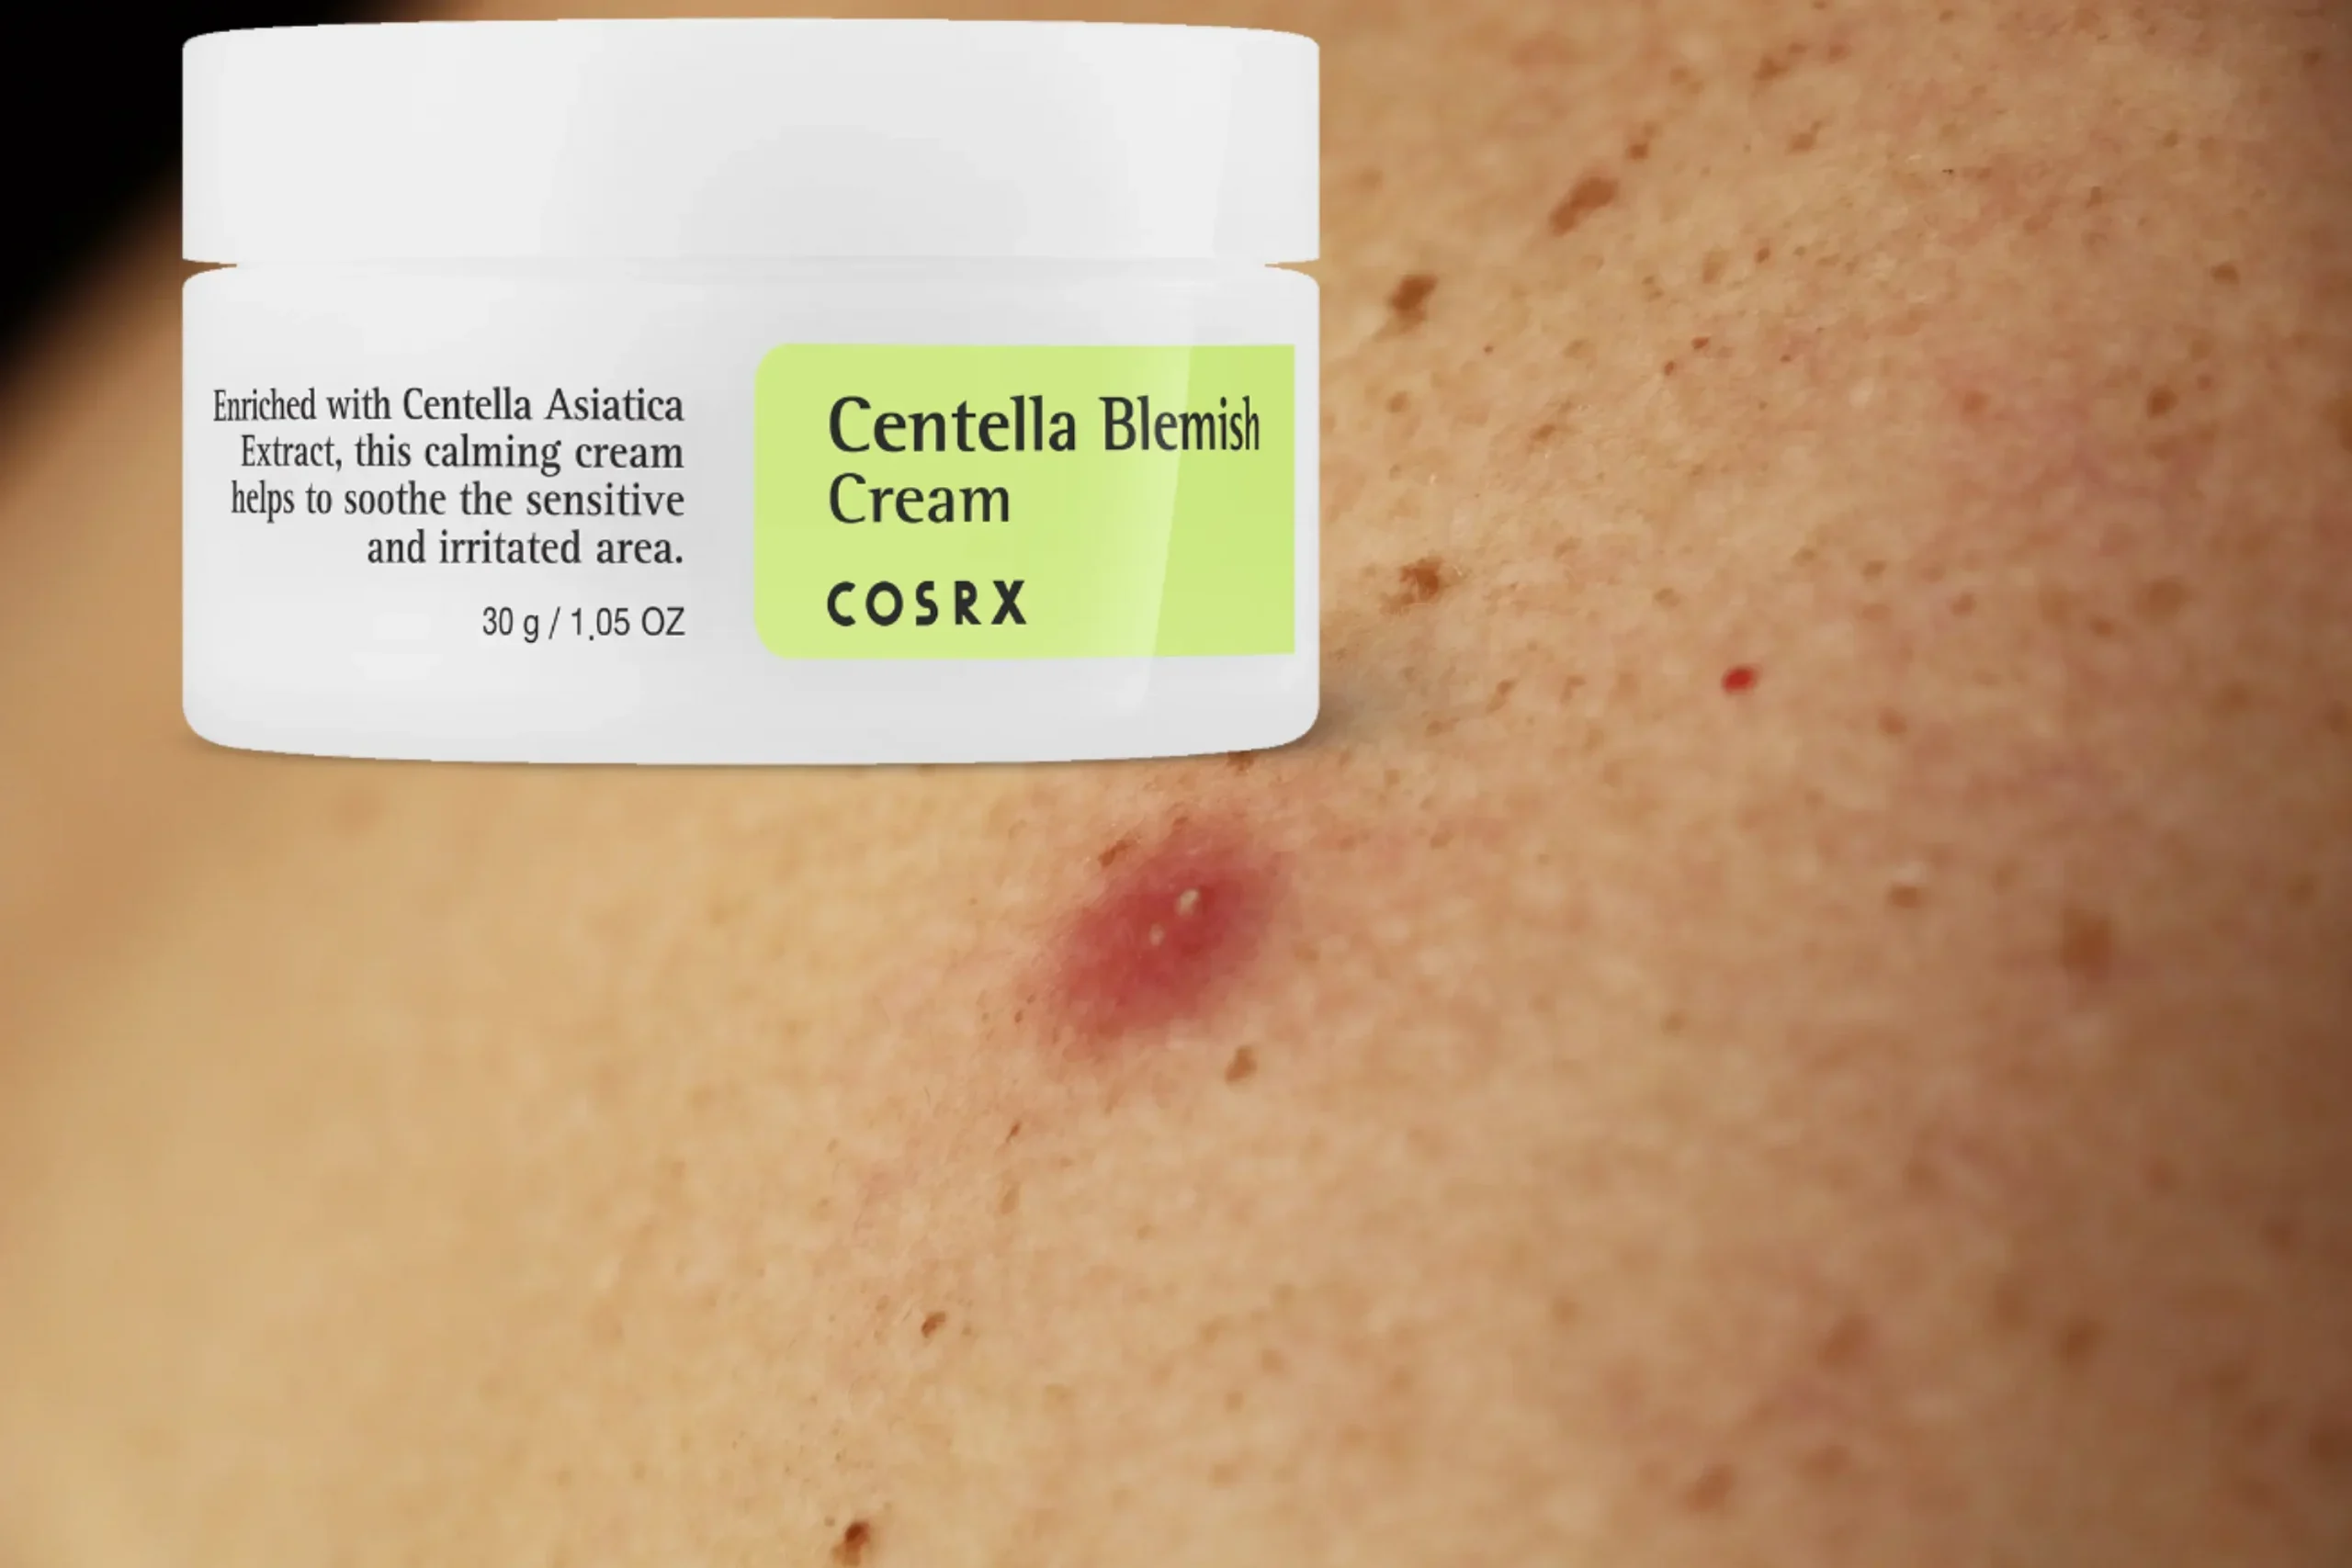 Cosrx Centella Blemish Cream Review